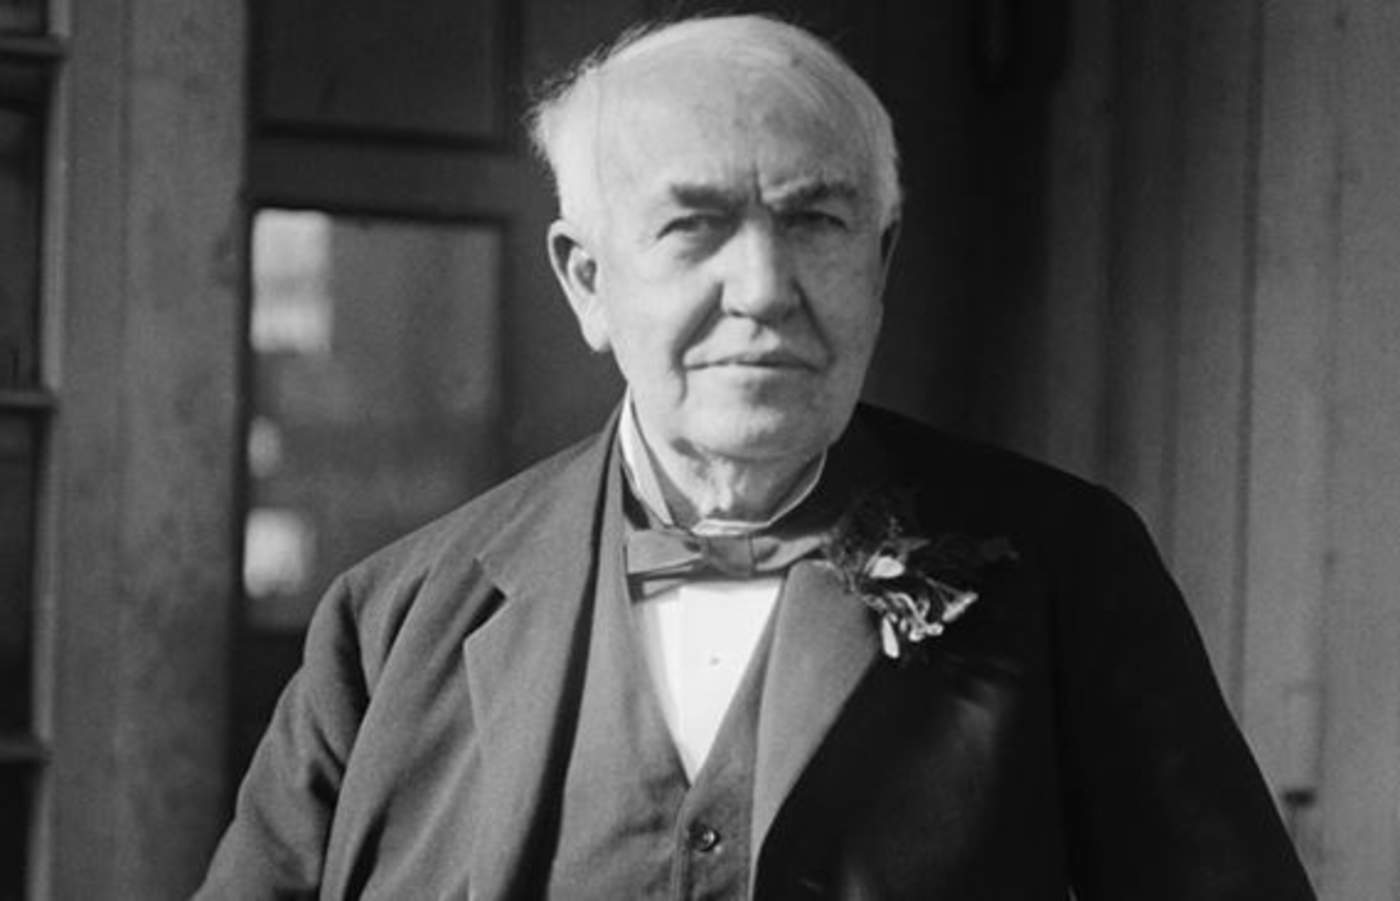 1847: Nace Thomas Alva Edison, reconocido empresario y prolífico inventor